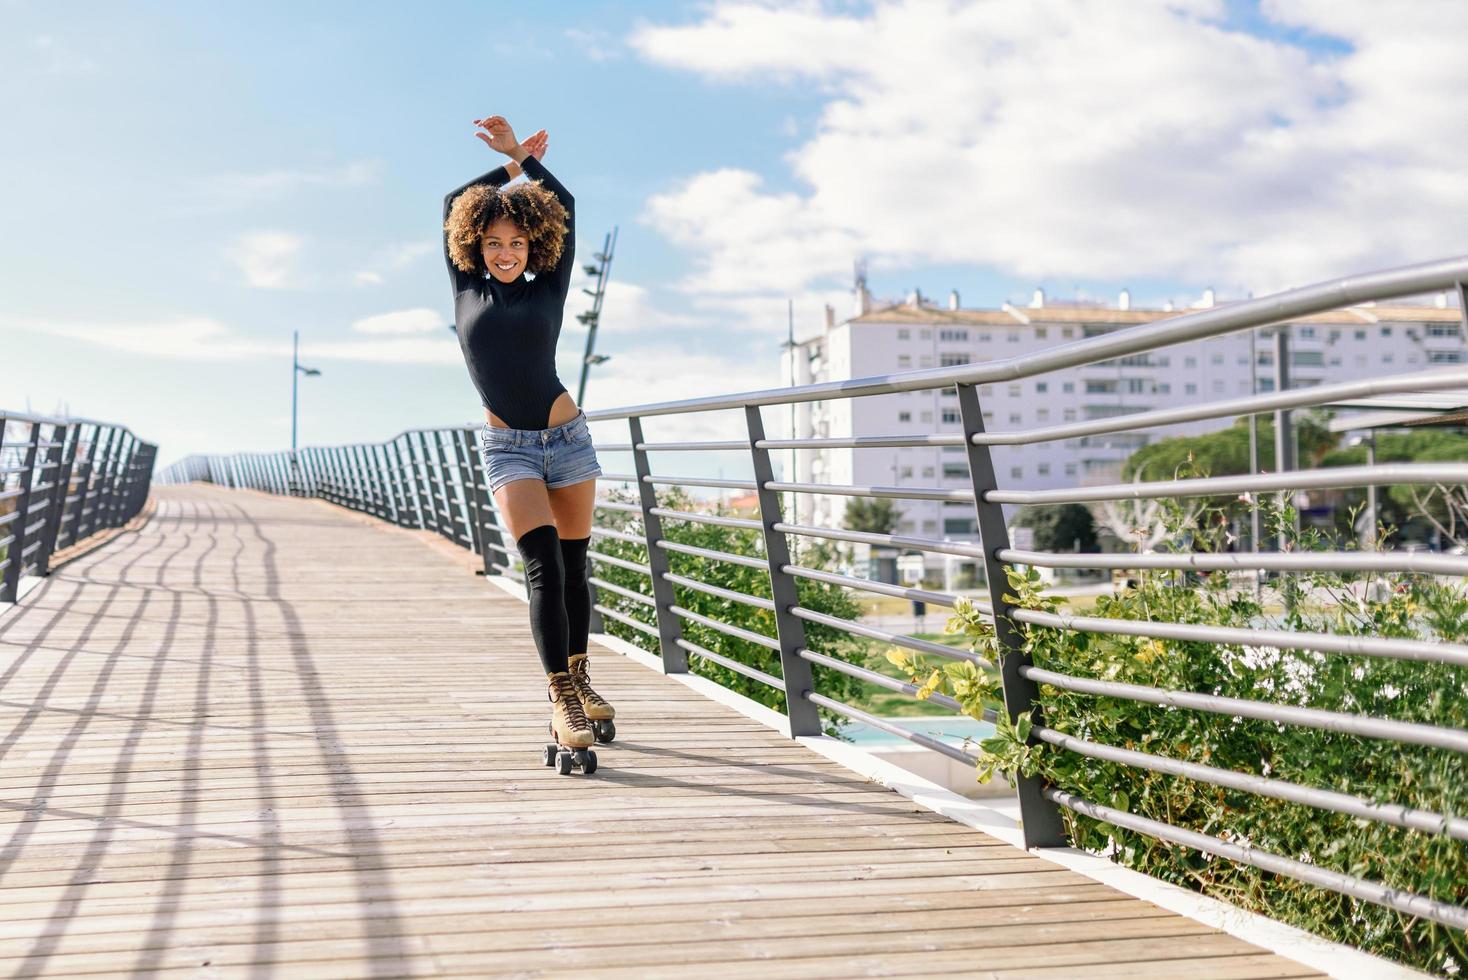 coiffure afro femme sur patins à roulettes à l'extérieur sur le pont urbain photo